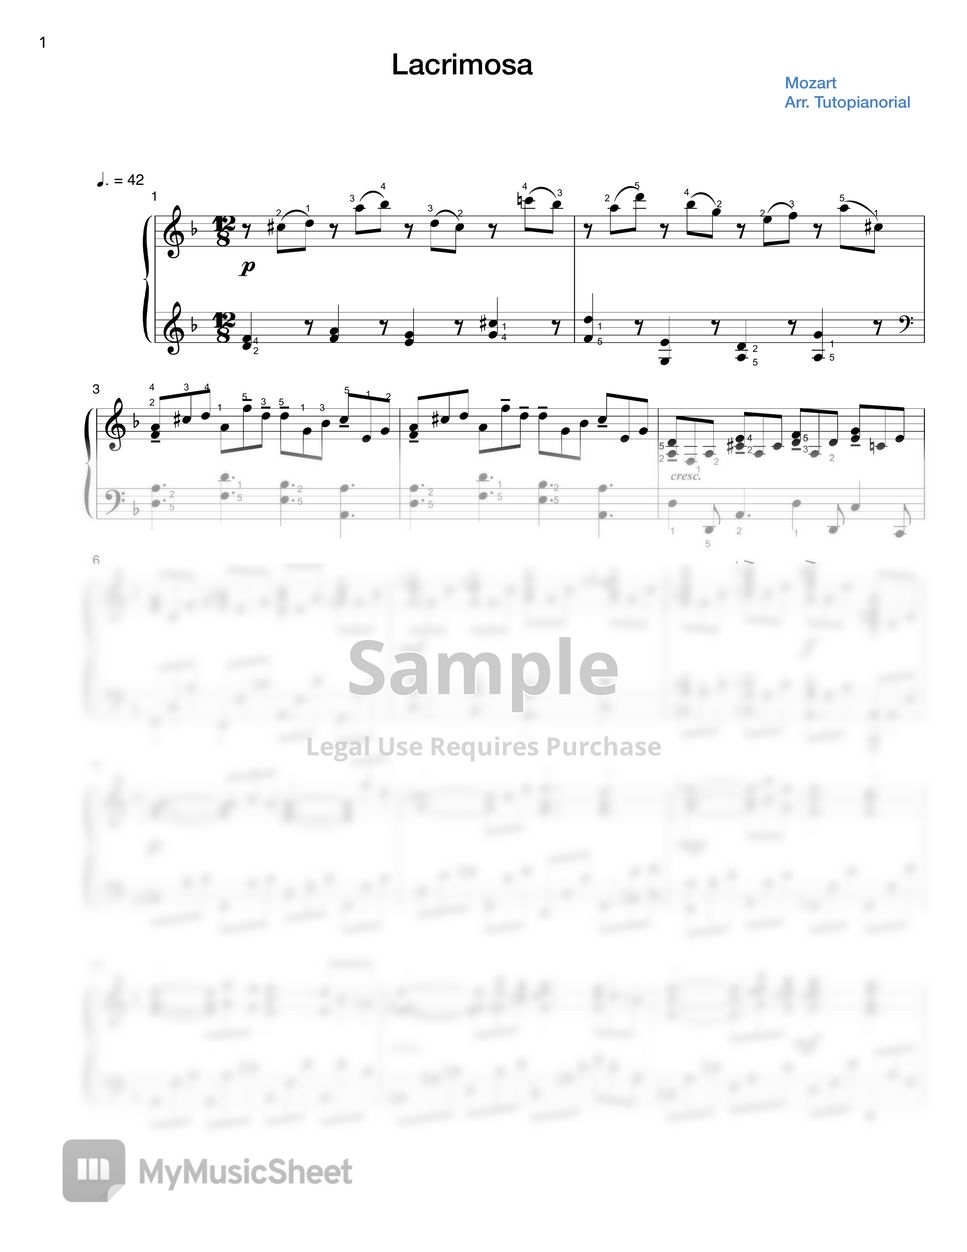 Mozart - Lacrimosa by Tutopianorial